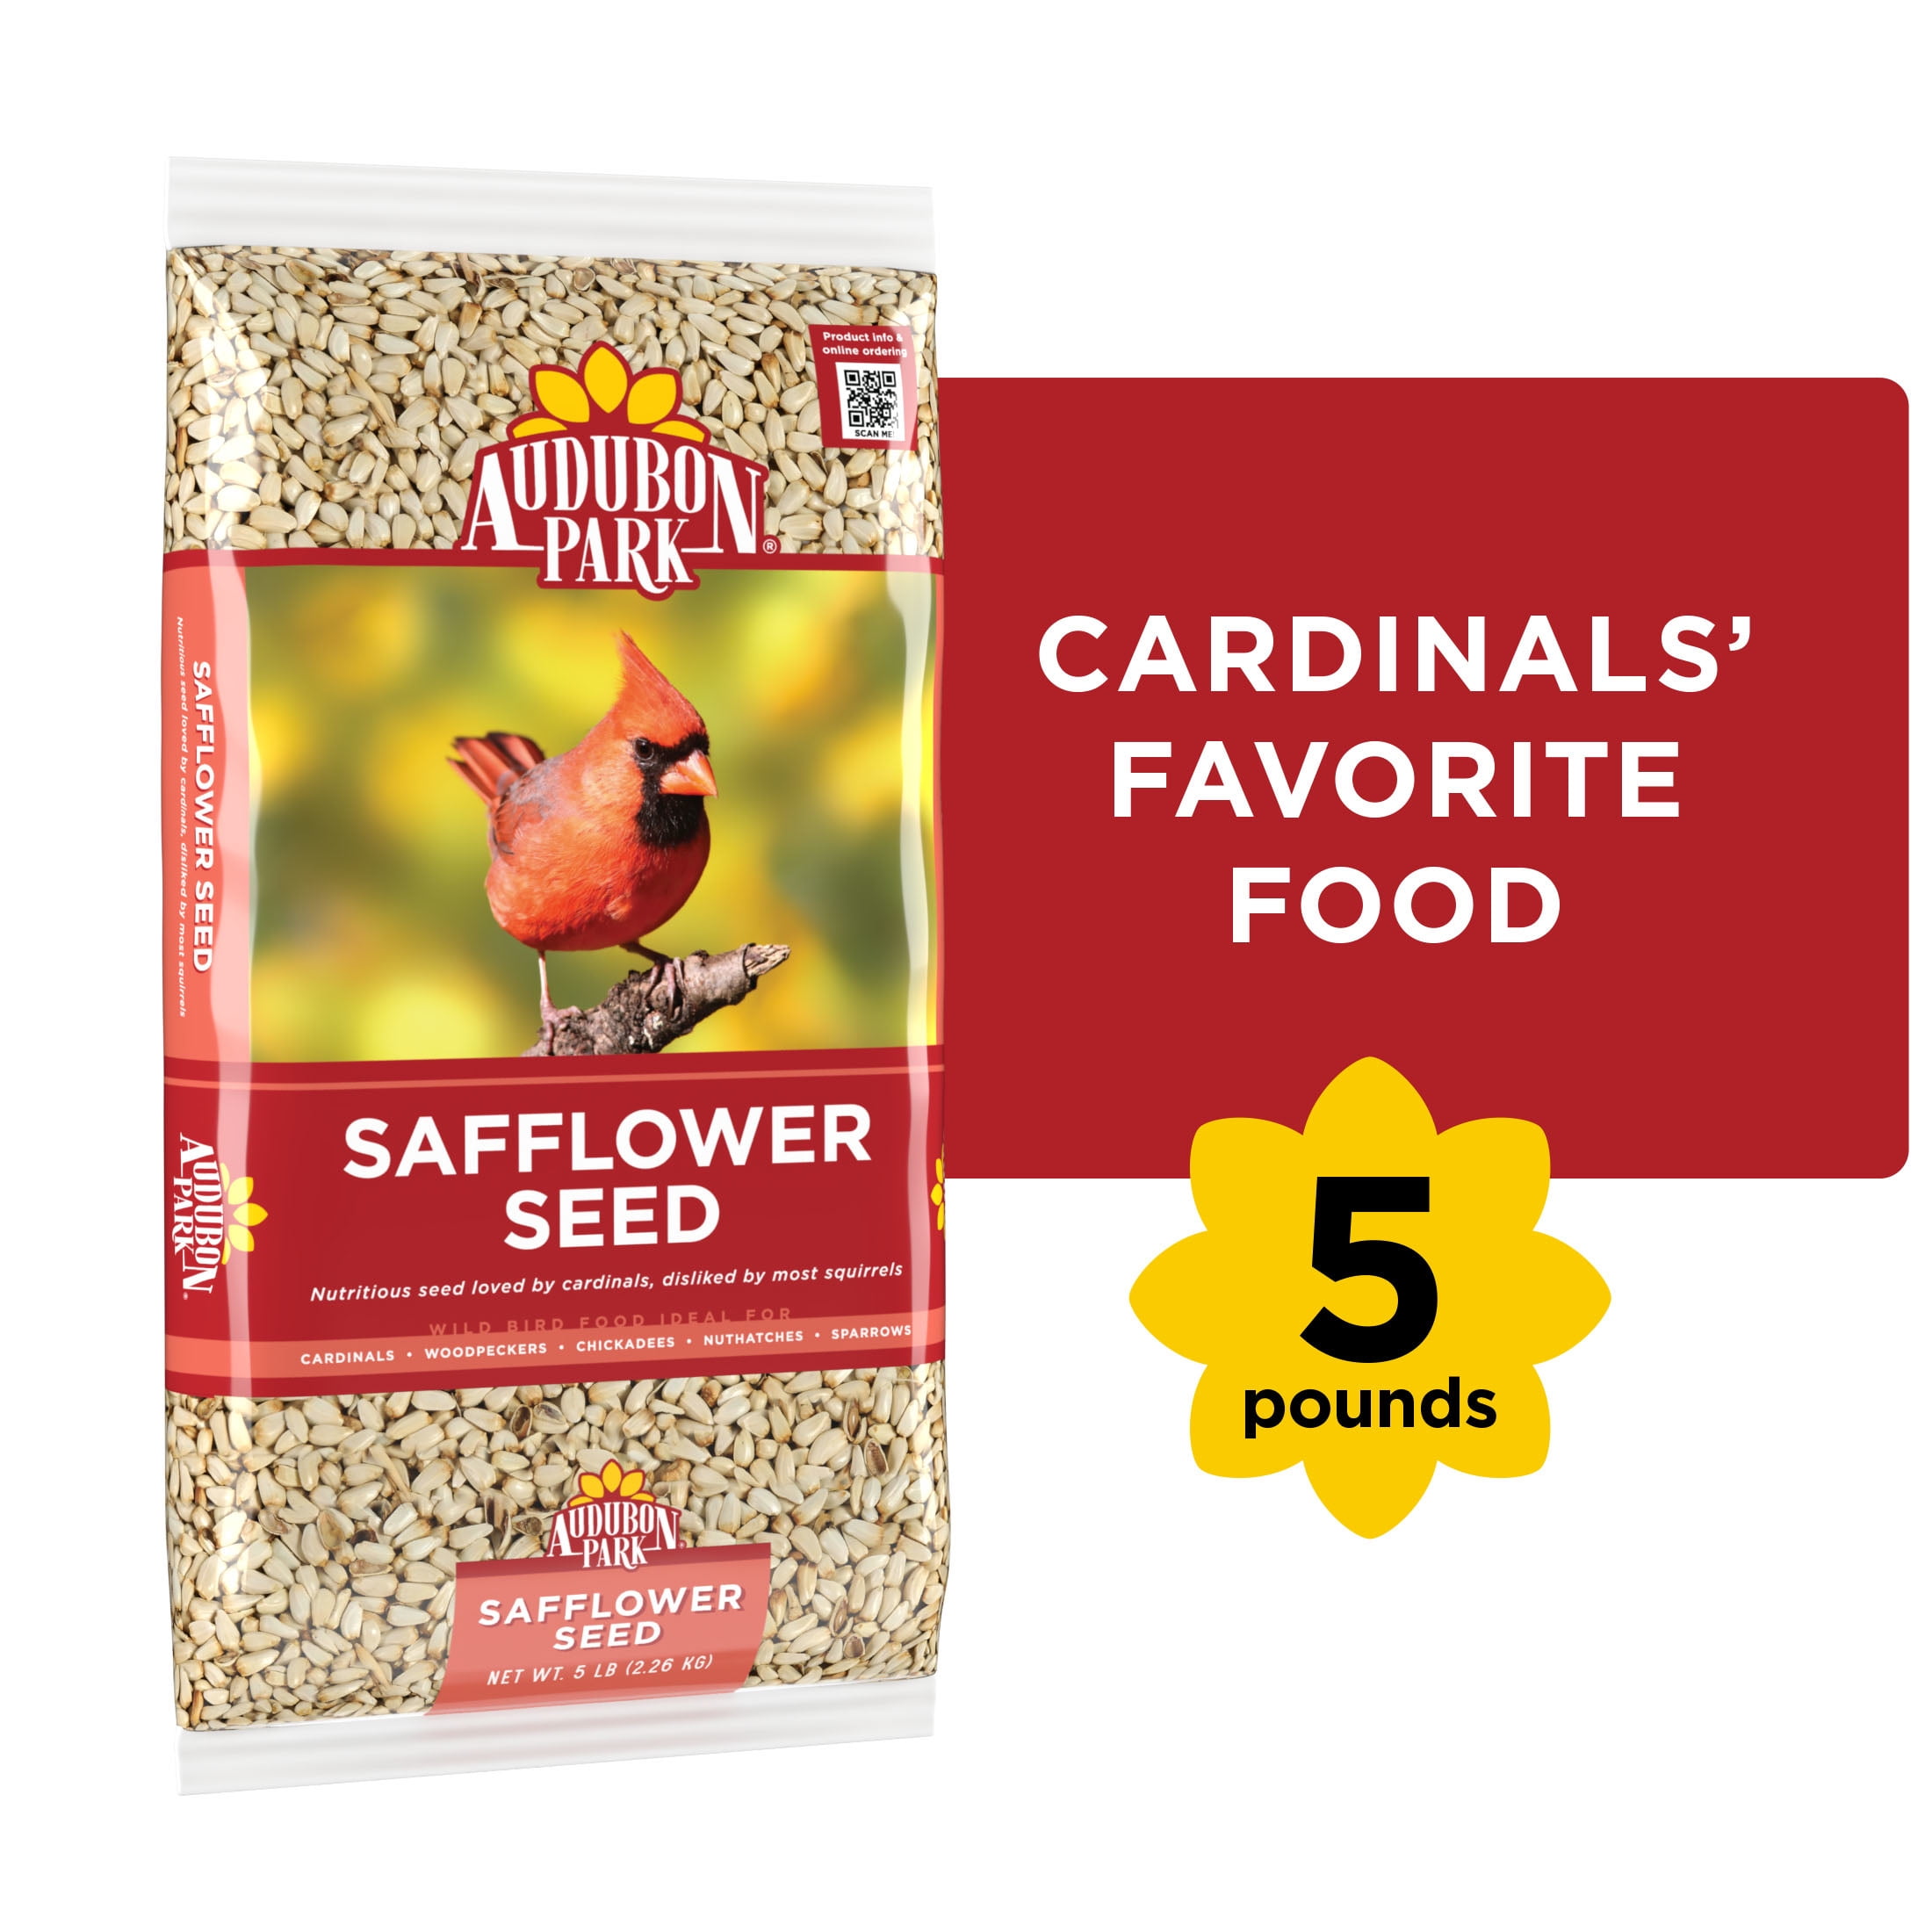 Audubon Park Safflower Seed Wild Bird Food, New, 5 lb. Bag